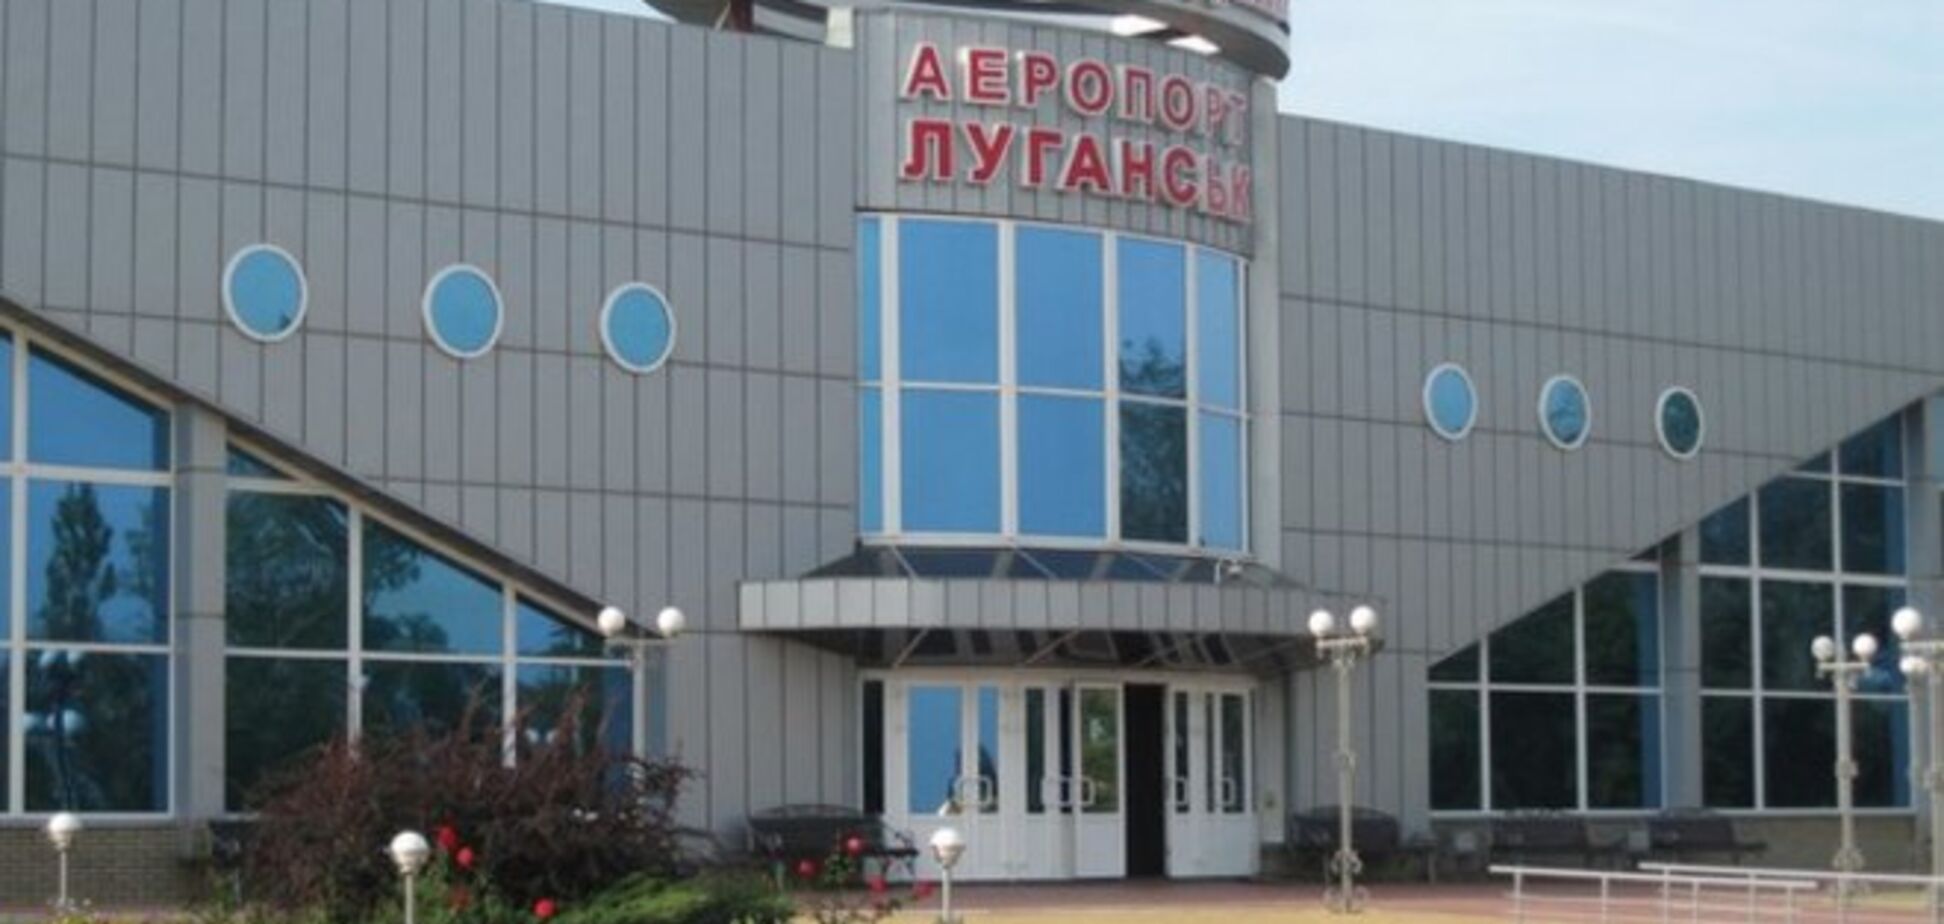 Терористи обстріляли з 'Граду' аеропорт Луганська